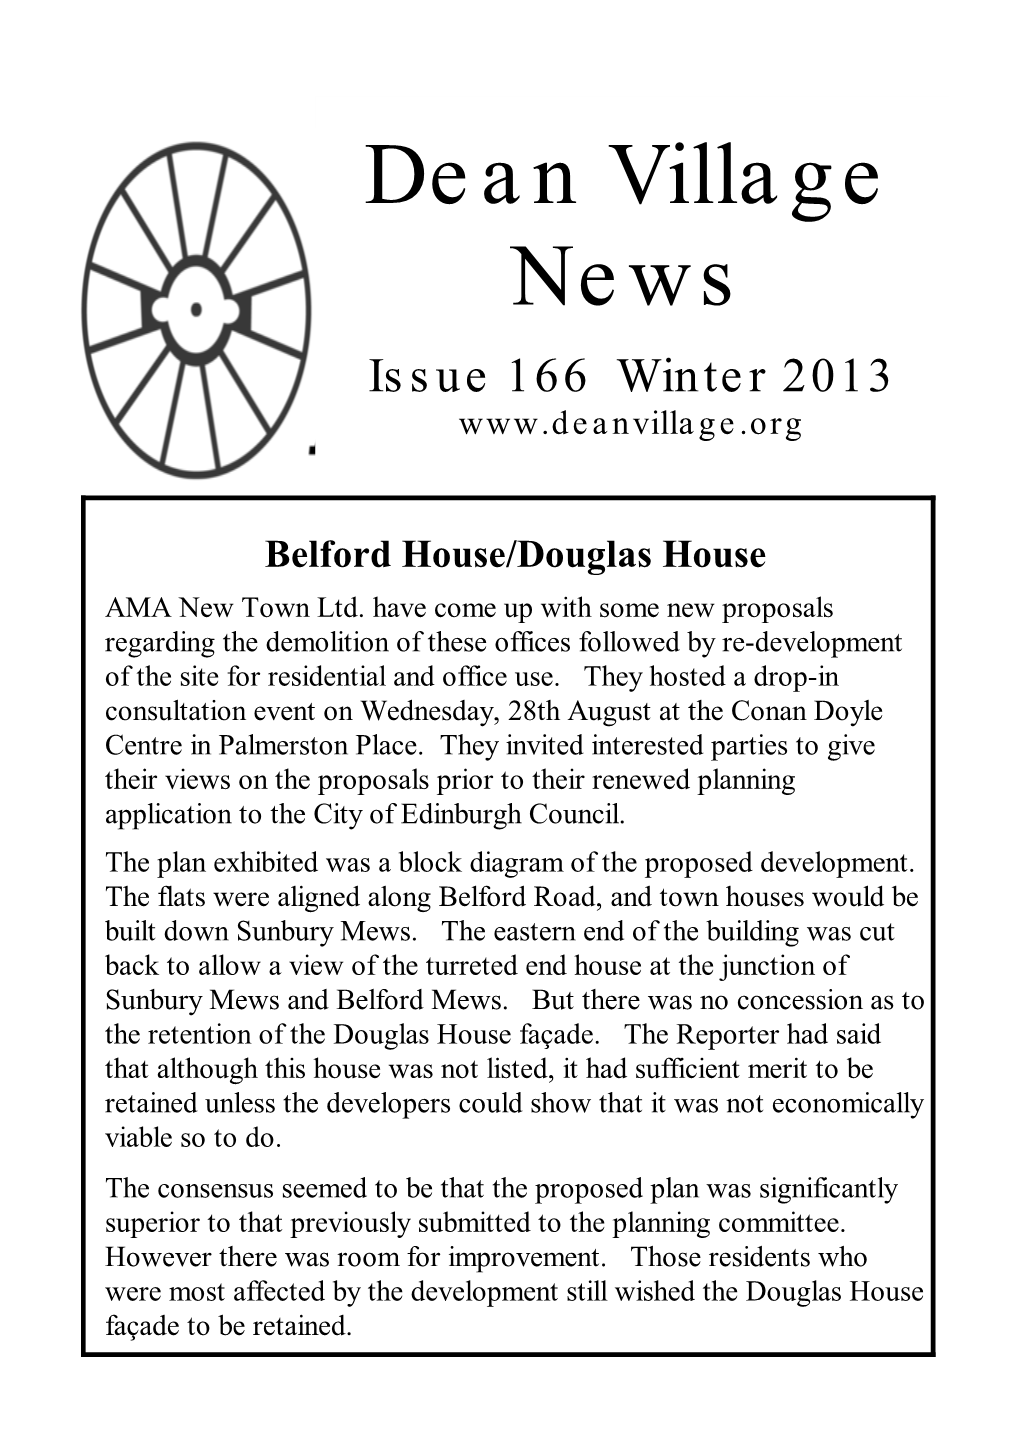 Dean Village News Issue 166 Winter 2013